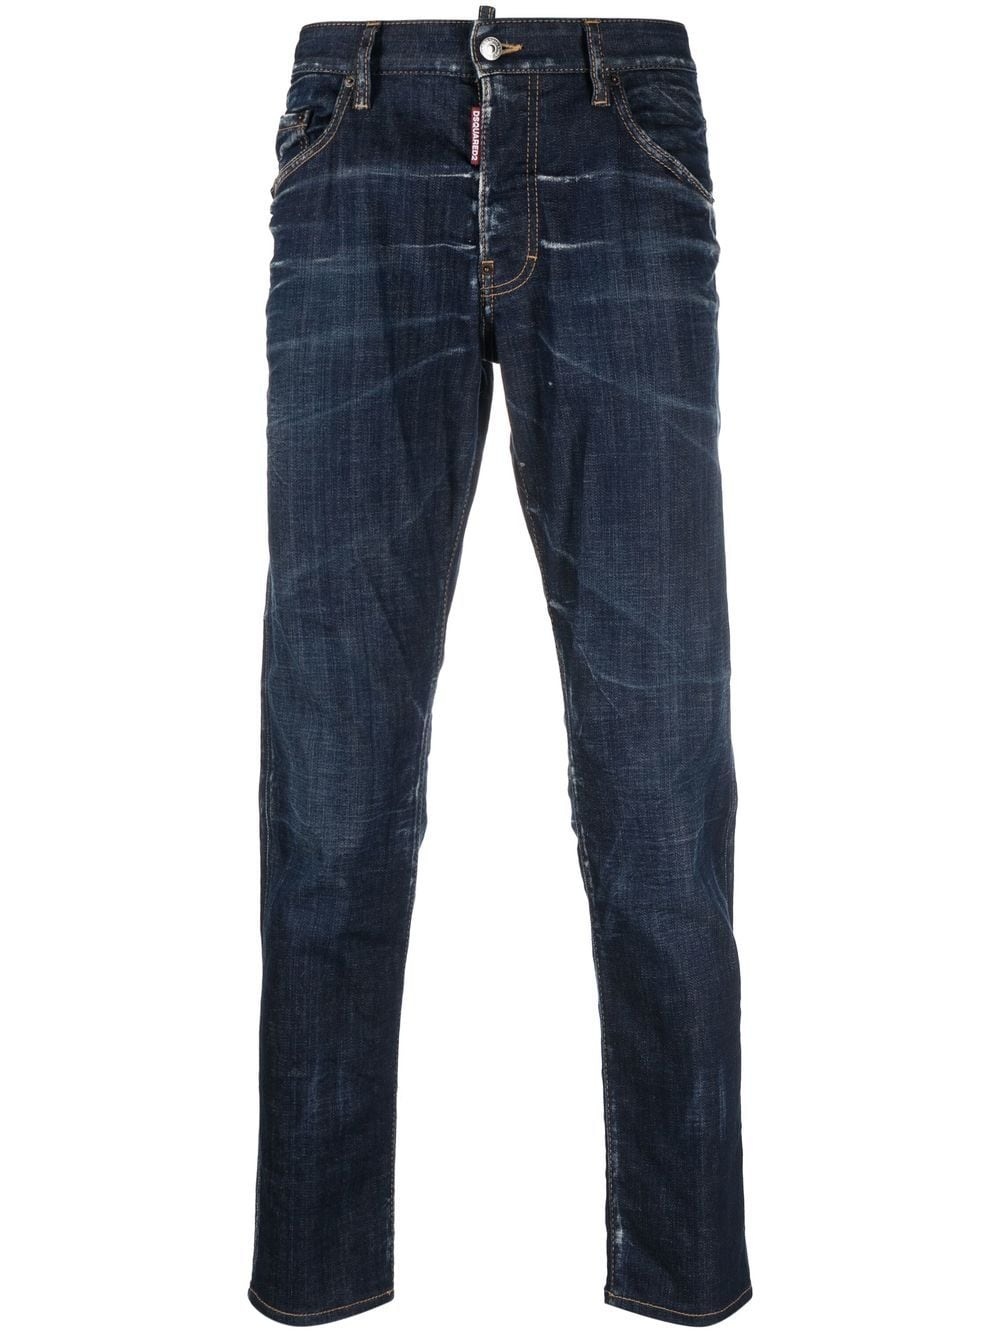 bleach-effect skinny jeans - 1